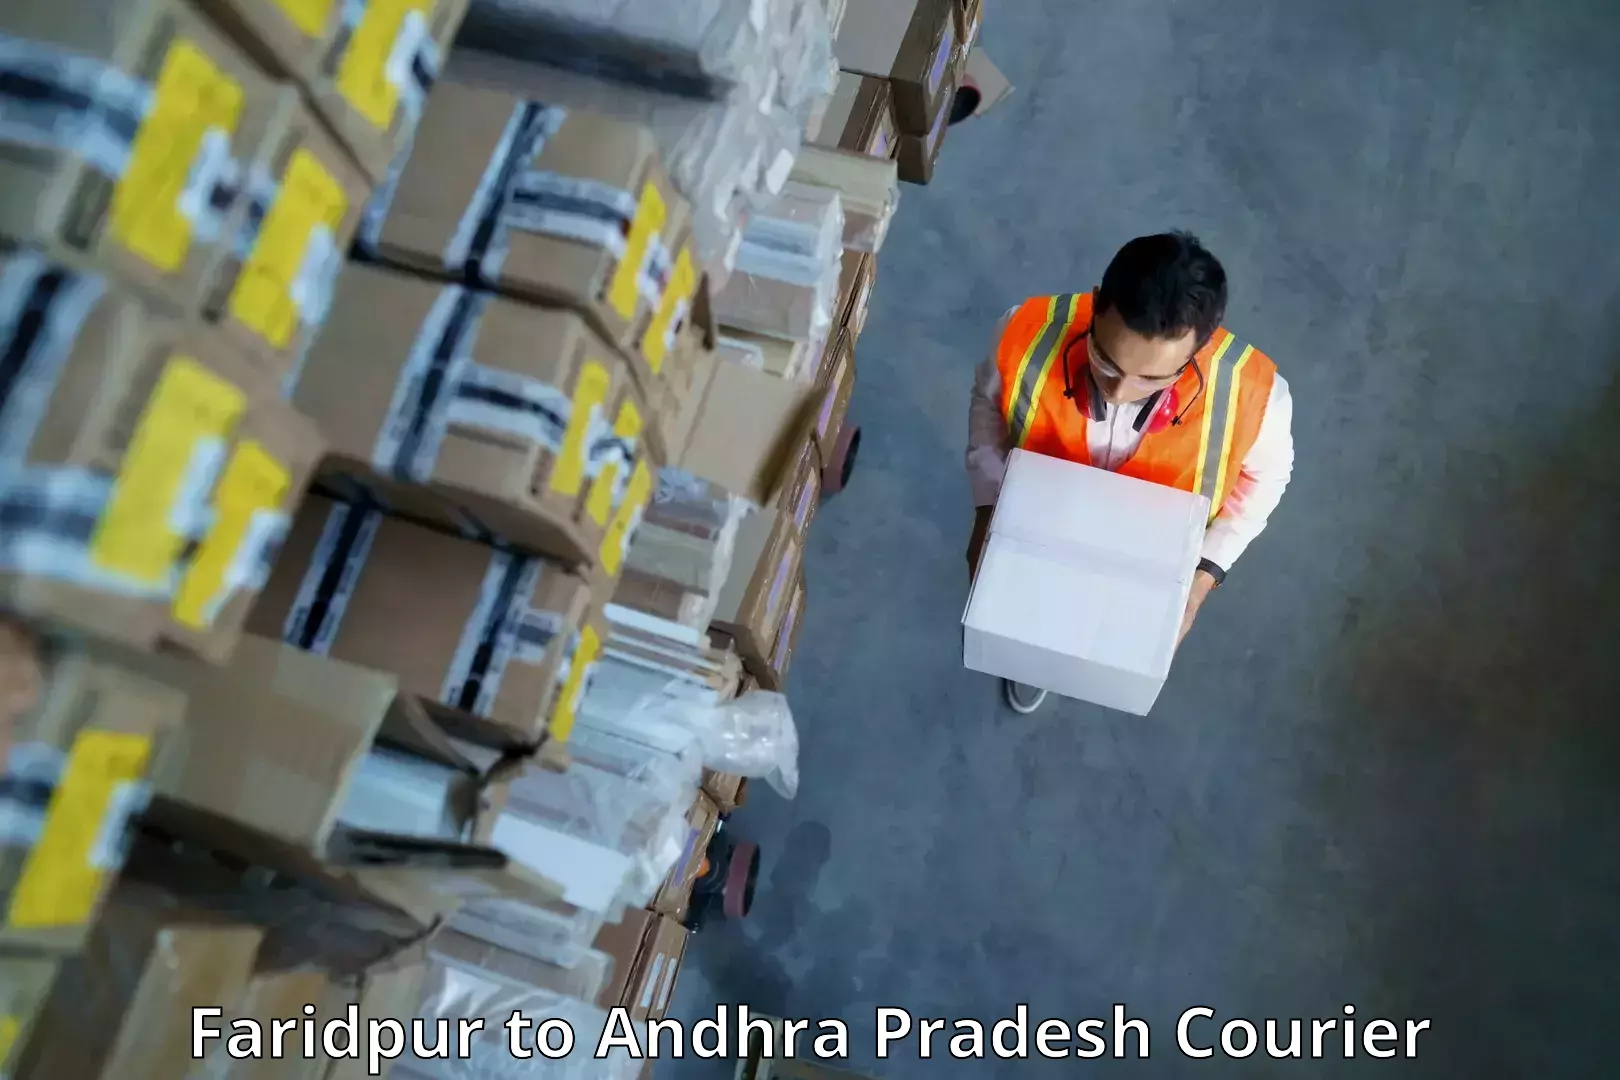 Premium courier services Faridpur to Amarapuram